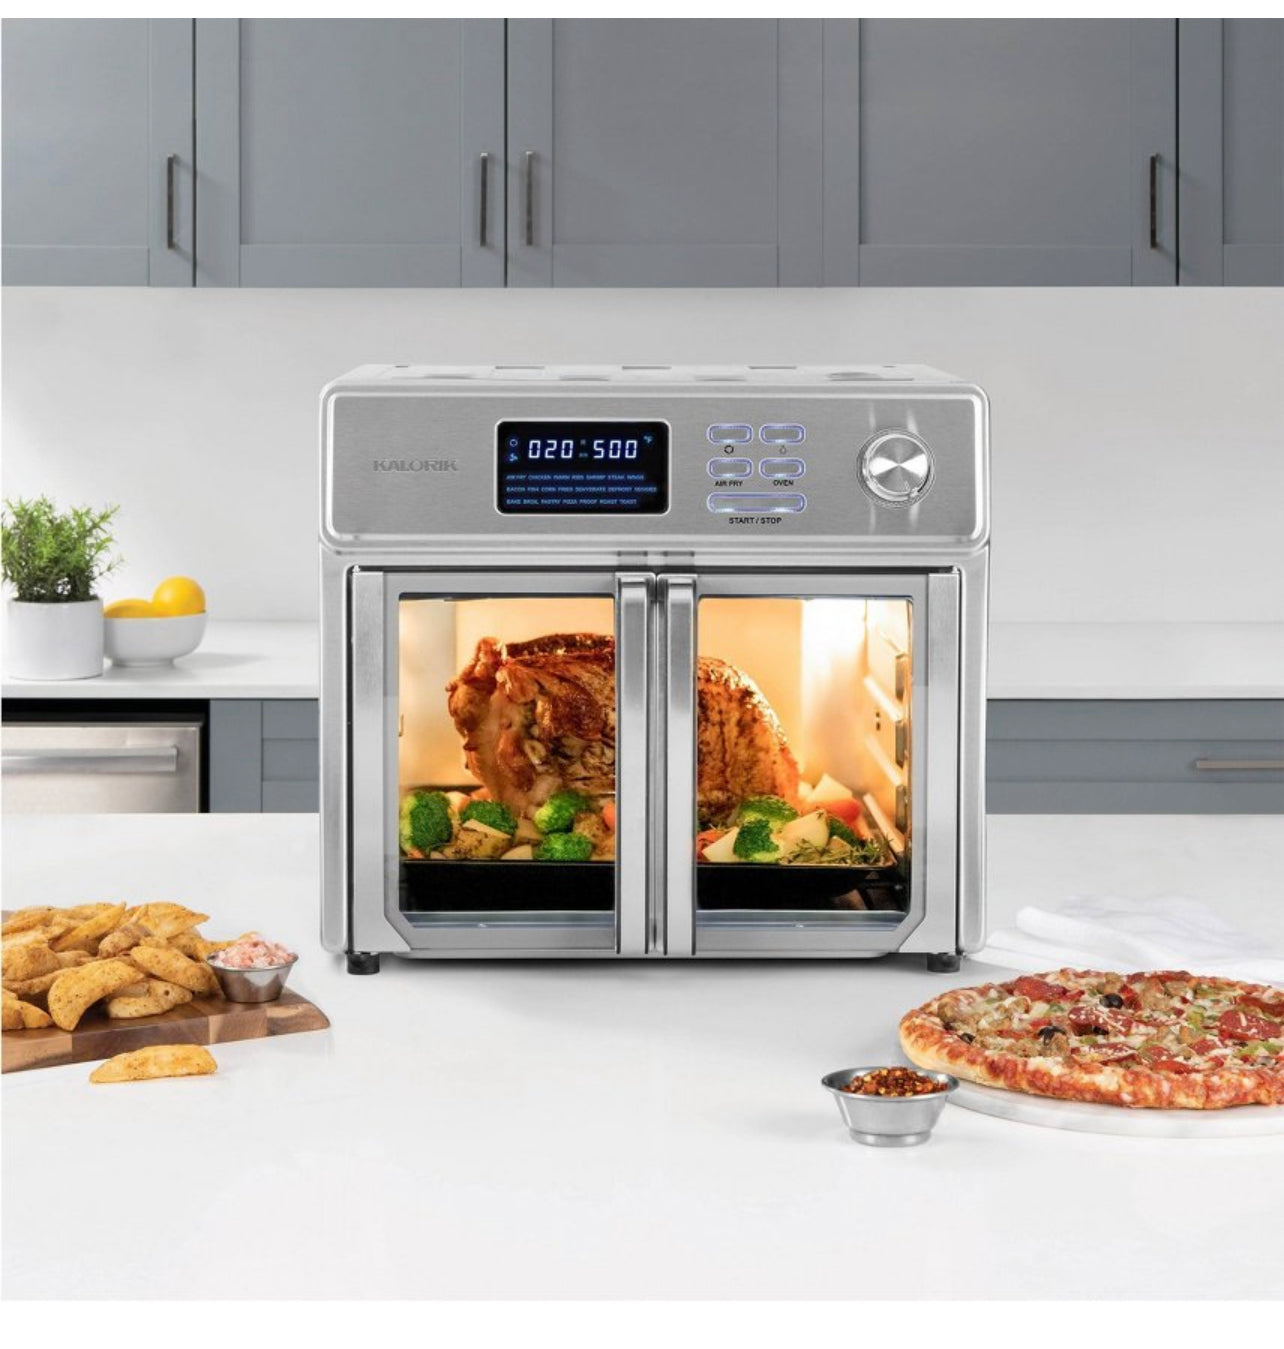 Kalorik 26QT Digital Max Air Fryer Oven